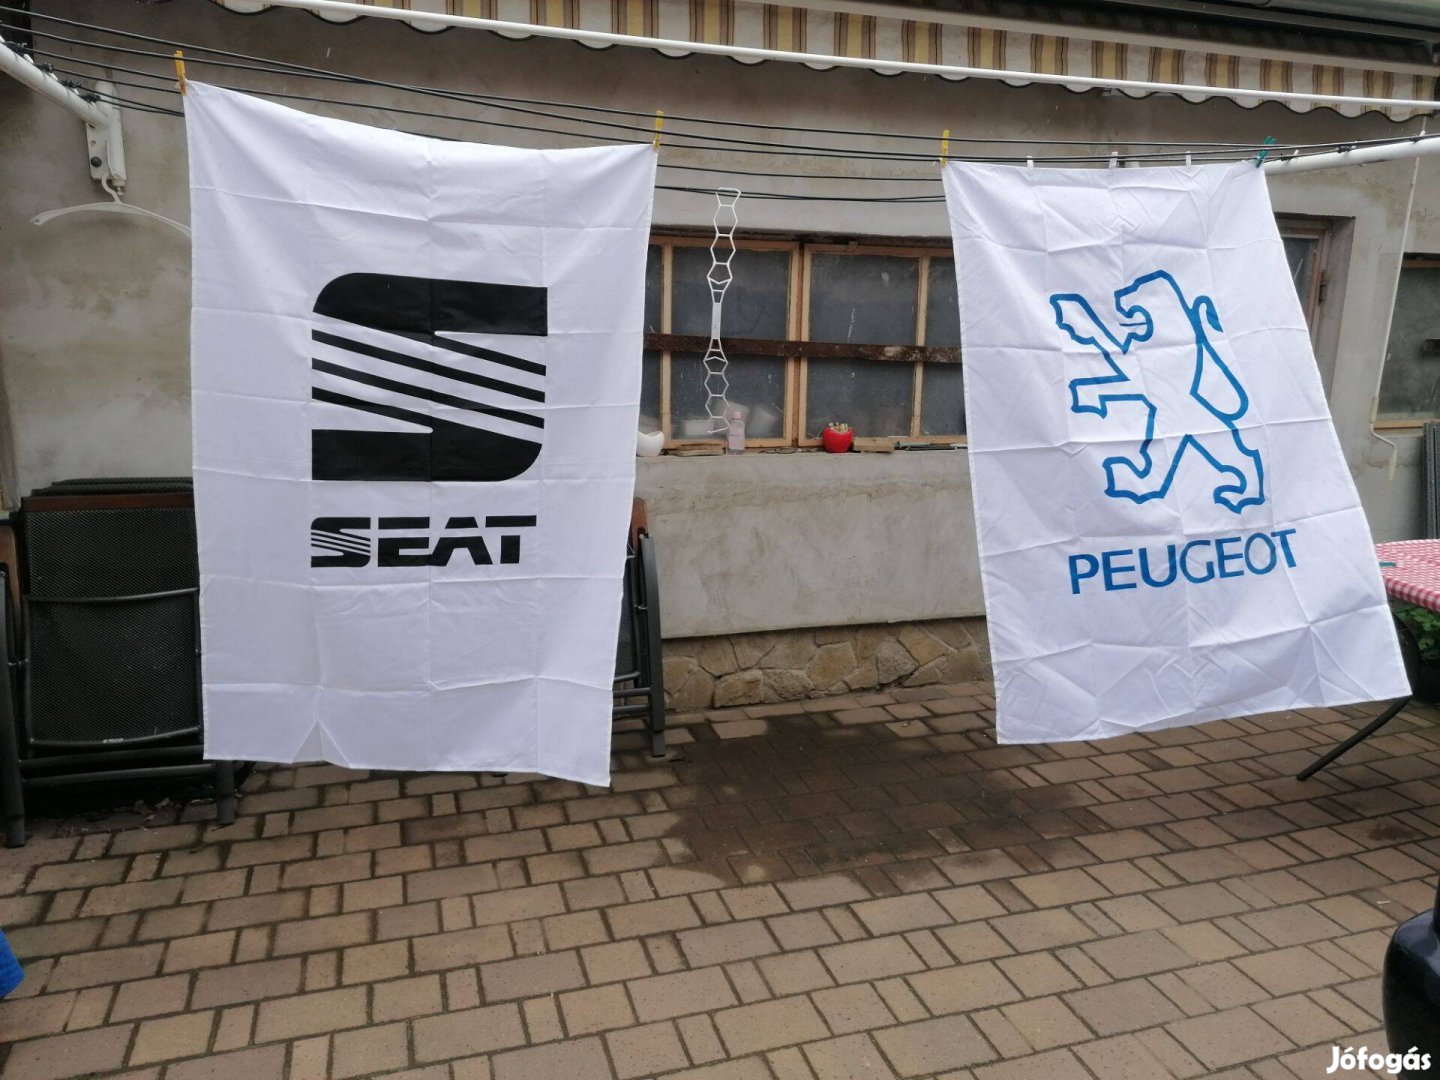 Új Peugeot és Seat emblémás sejem zászló. 2M x 1M